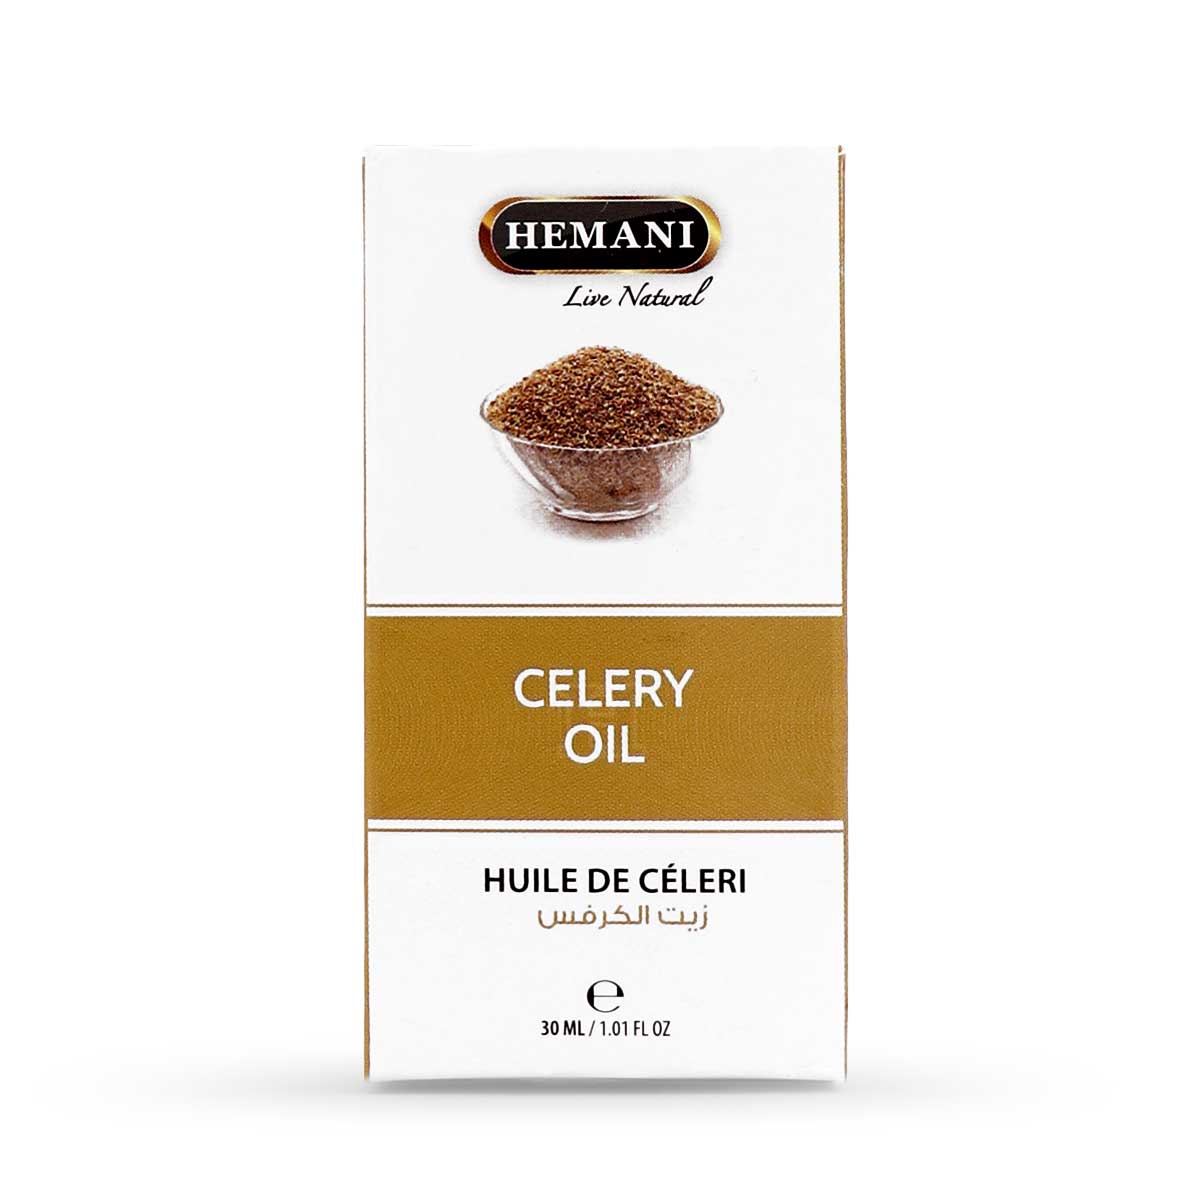 Hemani Celery Oil, 30ml